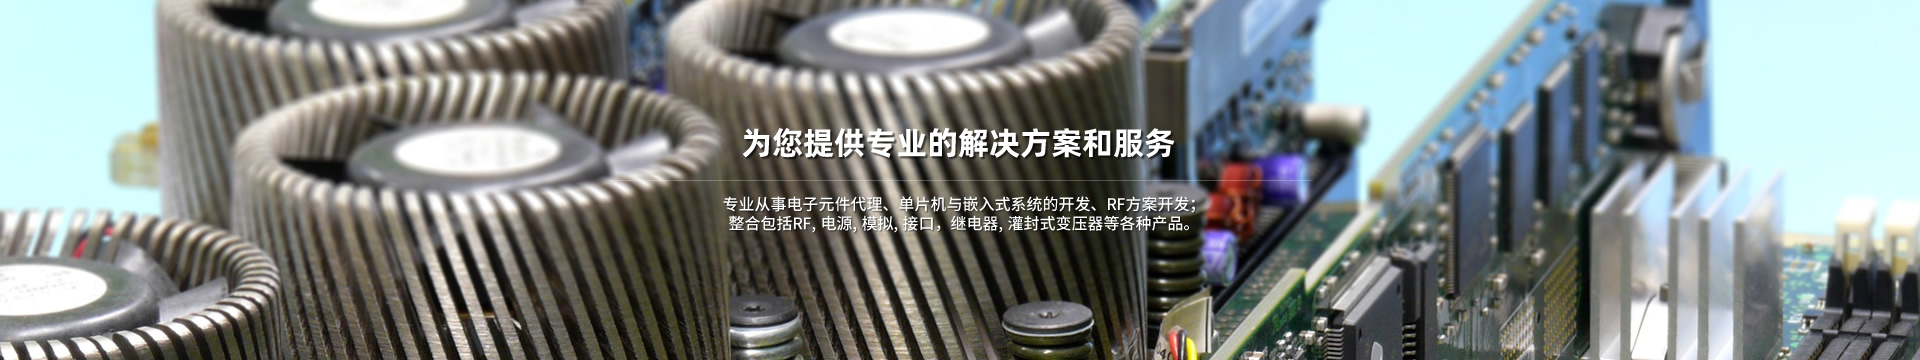 2150w-充电桩系列-上海杰纳电子科技有限公司-上海杰纳电子科技有限公司